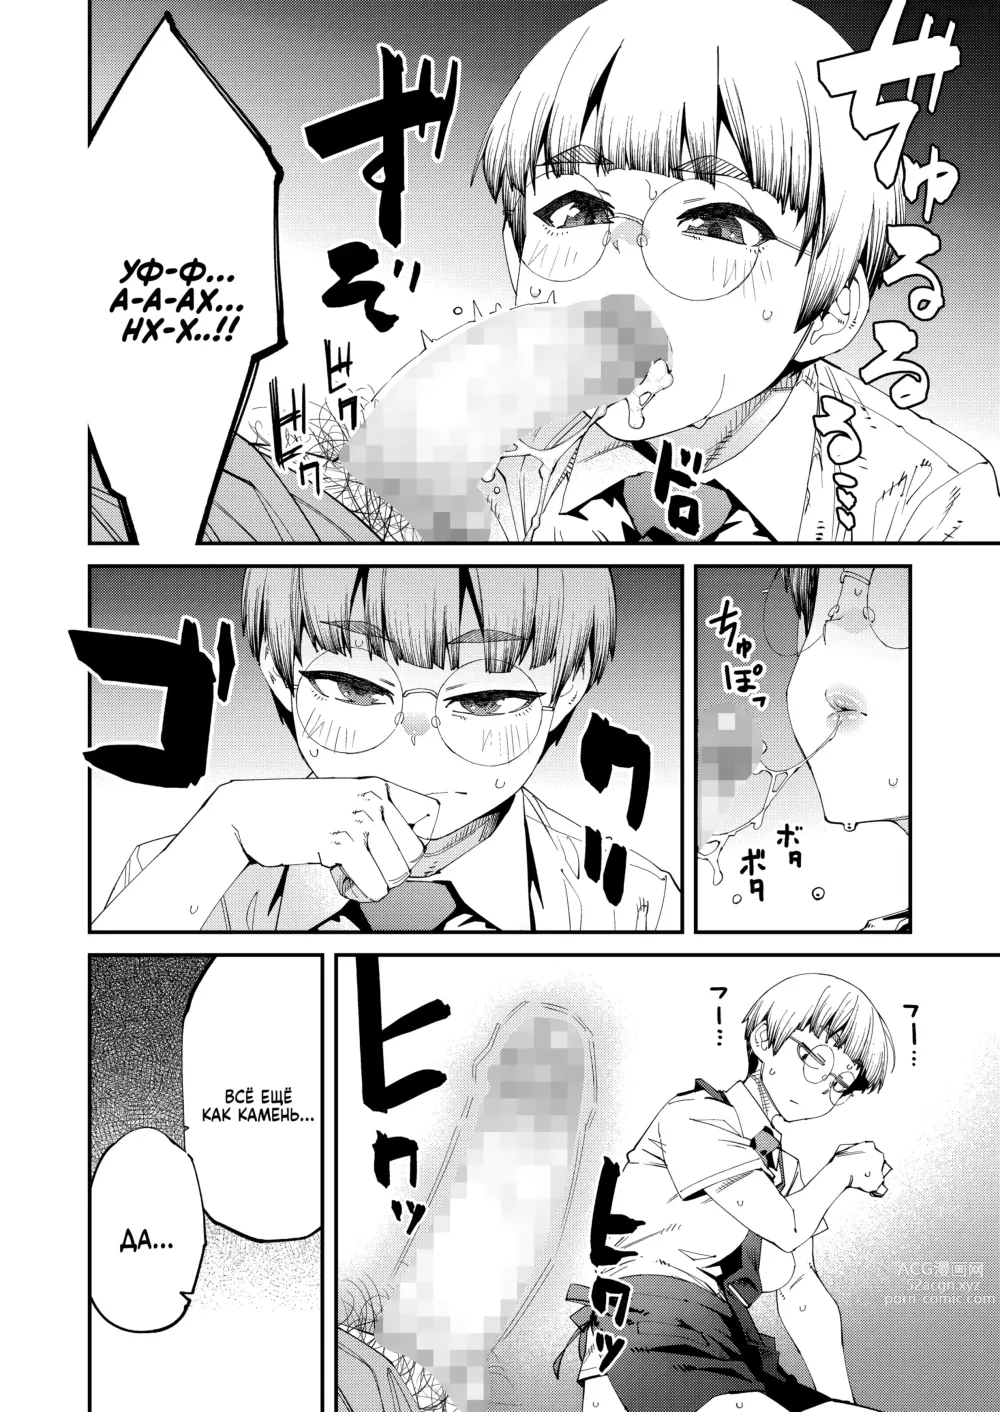 Page 8 of manga Интернет-кафе с тарифом 